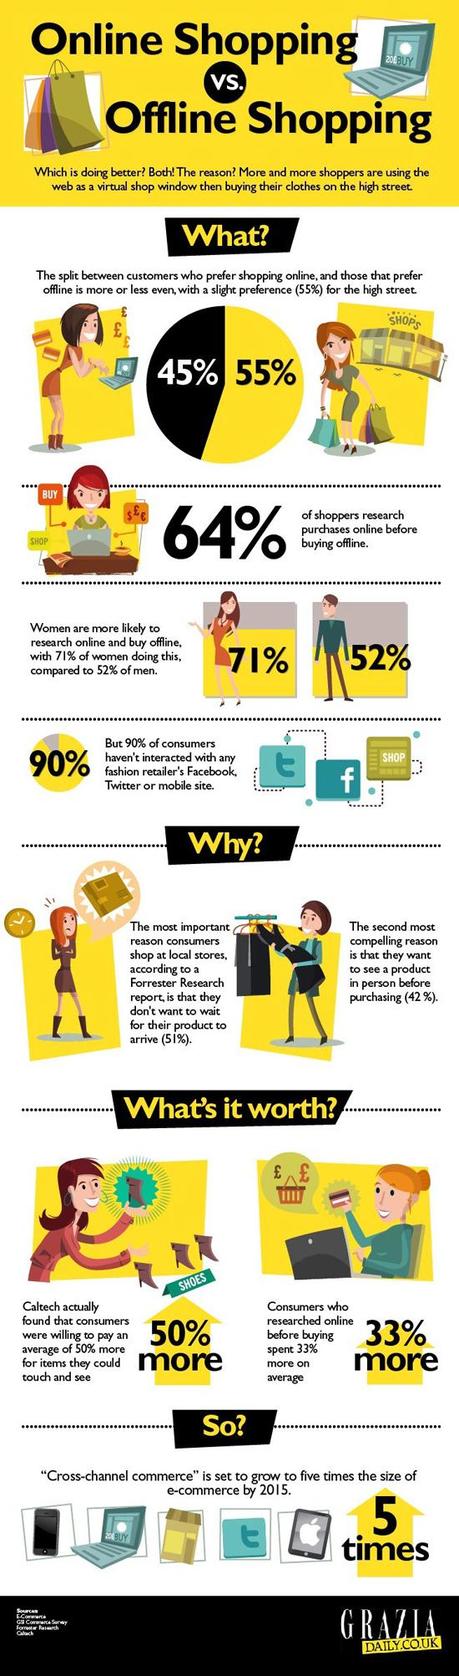 Infographic on Online vs Offline Shopping